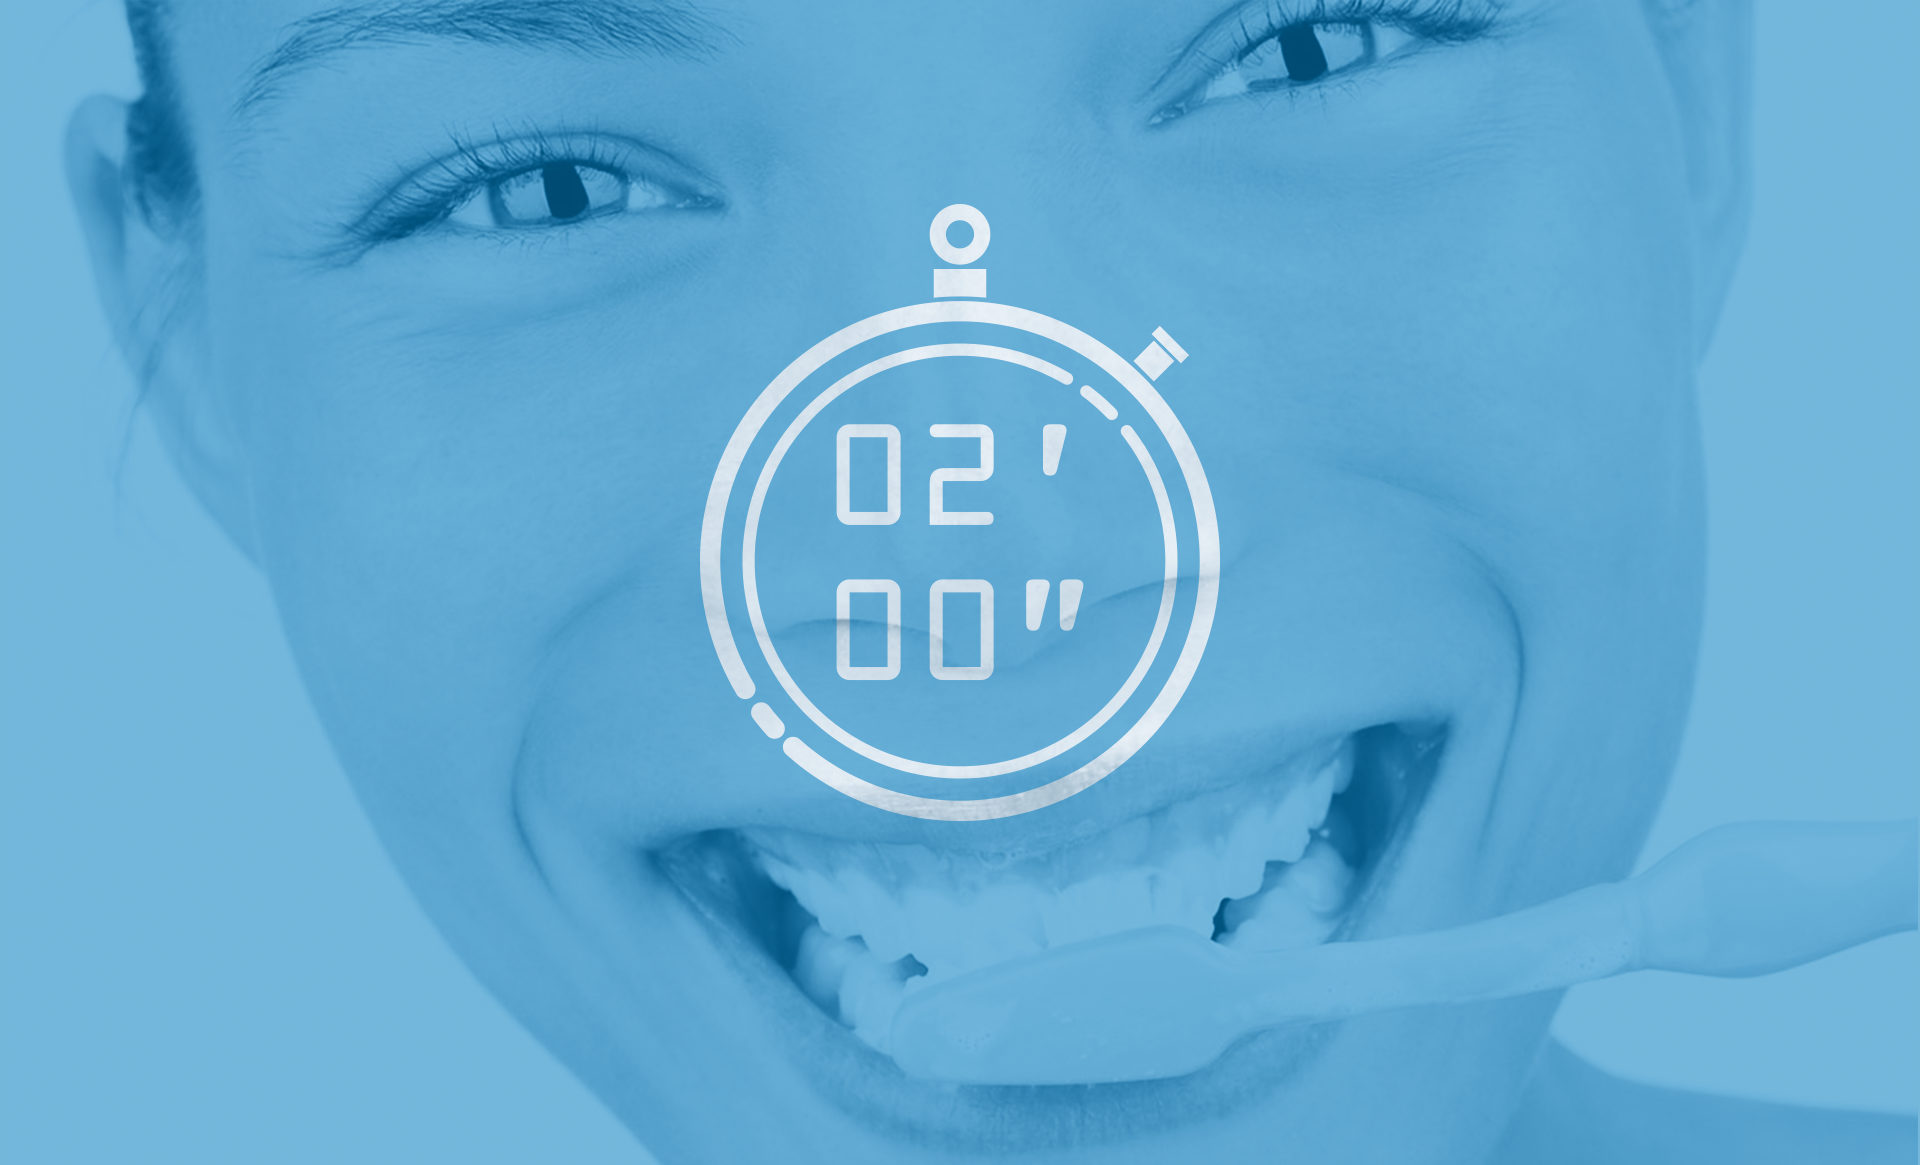 Imagen en la que se cuenta el tiempo de cepillado de la sección higiene dental